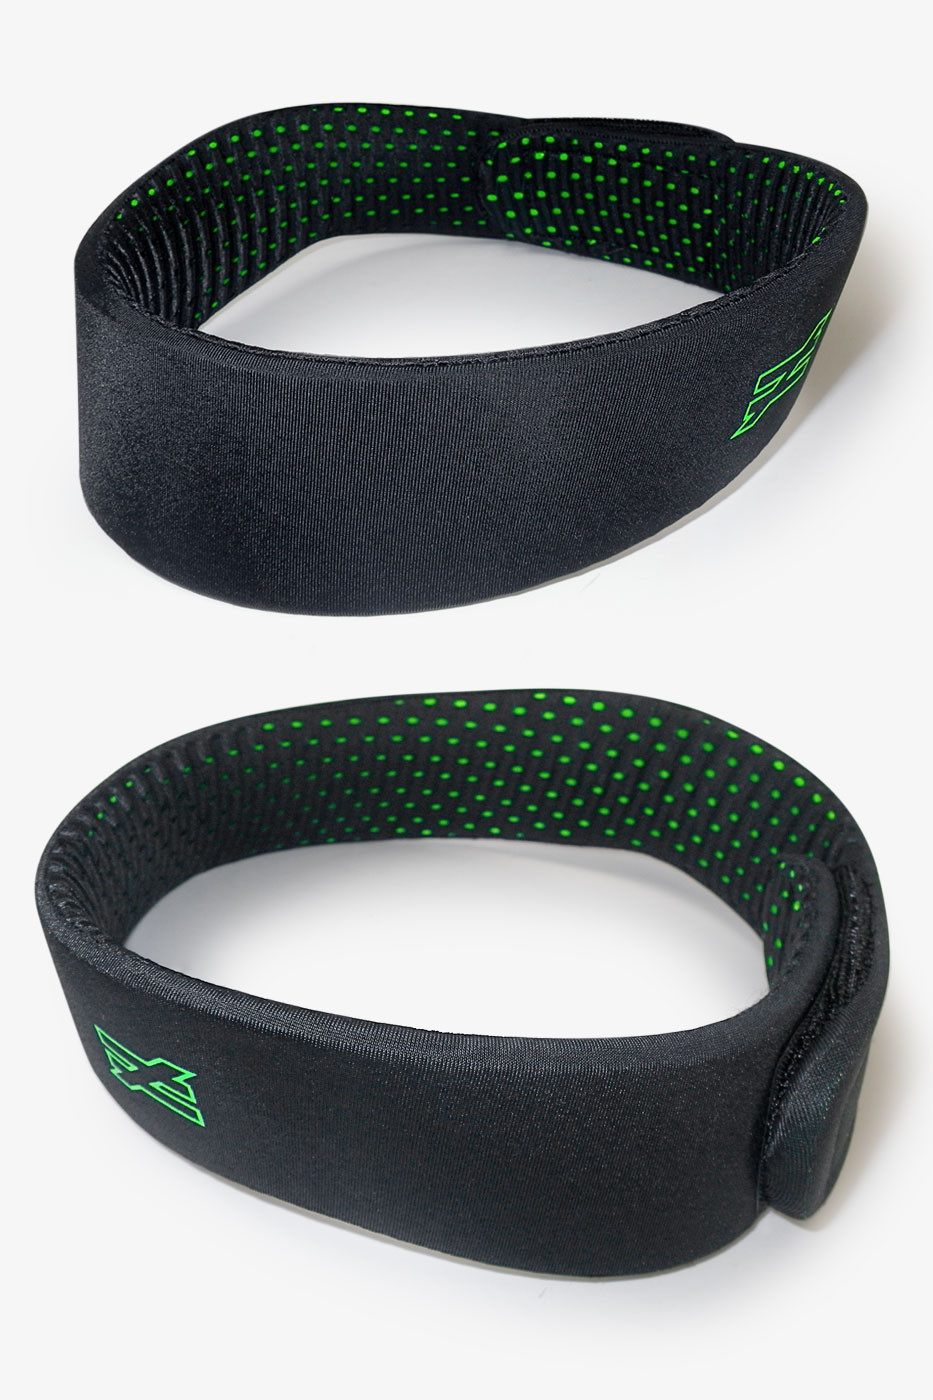 Halo 2  - 10MM soccer headband protection